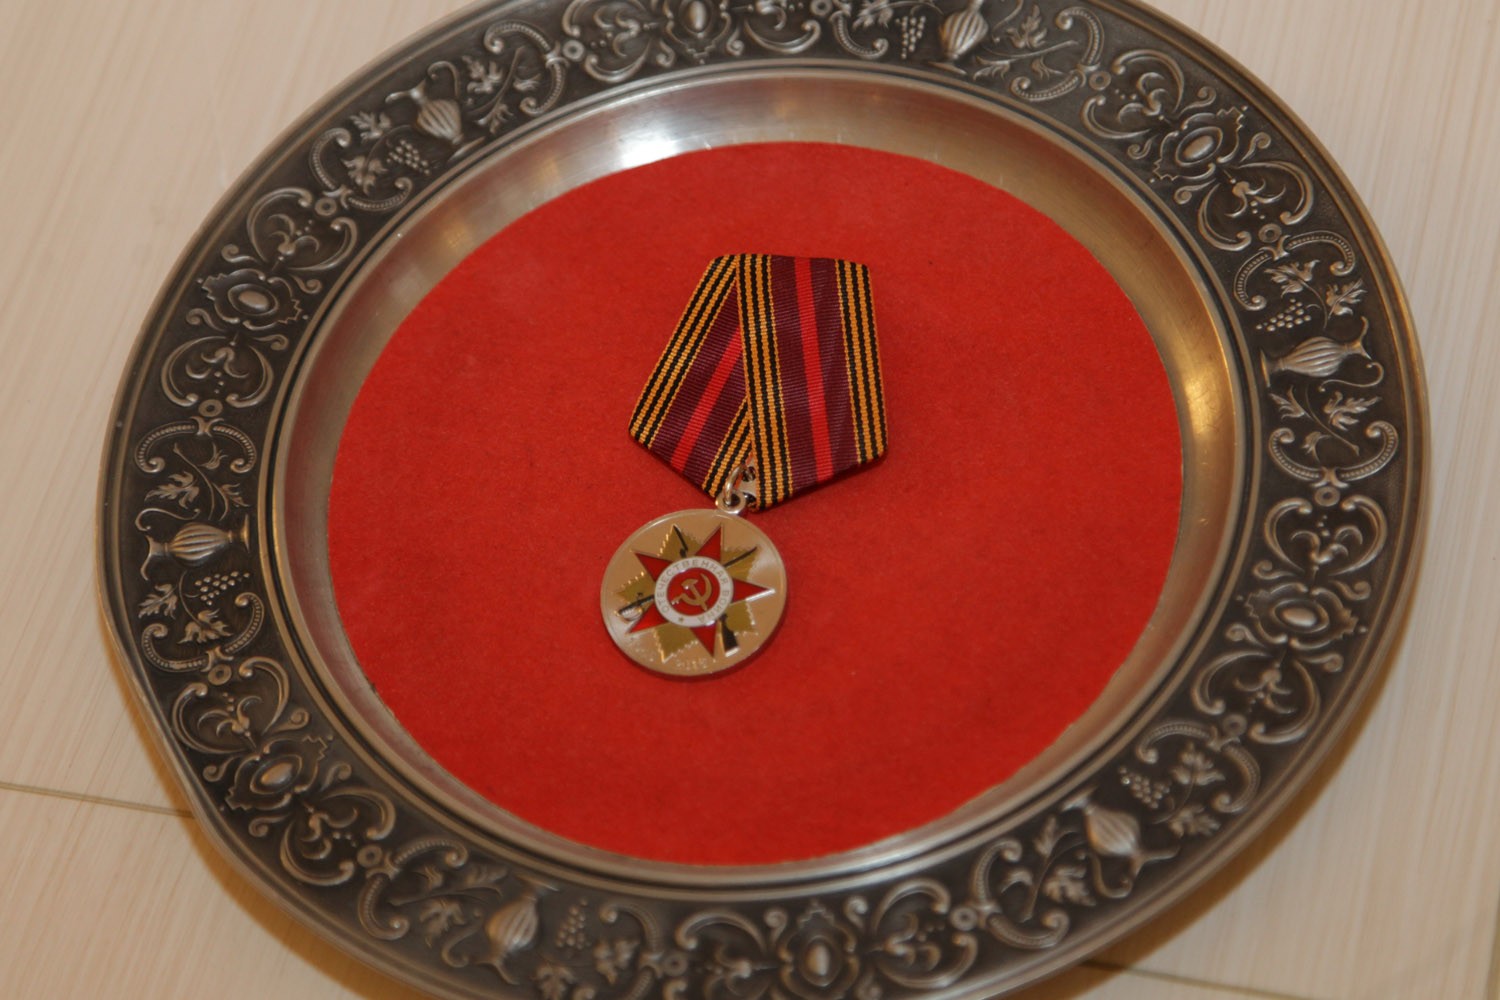  Юбилейными медалями наградят всех ветеранов ВОВ, в том числе и граждан Украины, проживающих в регионе Фото: пресс-служба губернатора Вологодской области 